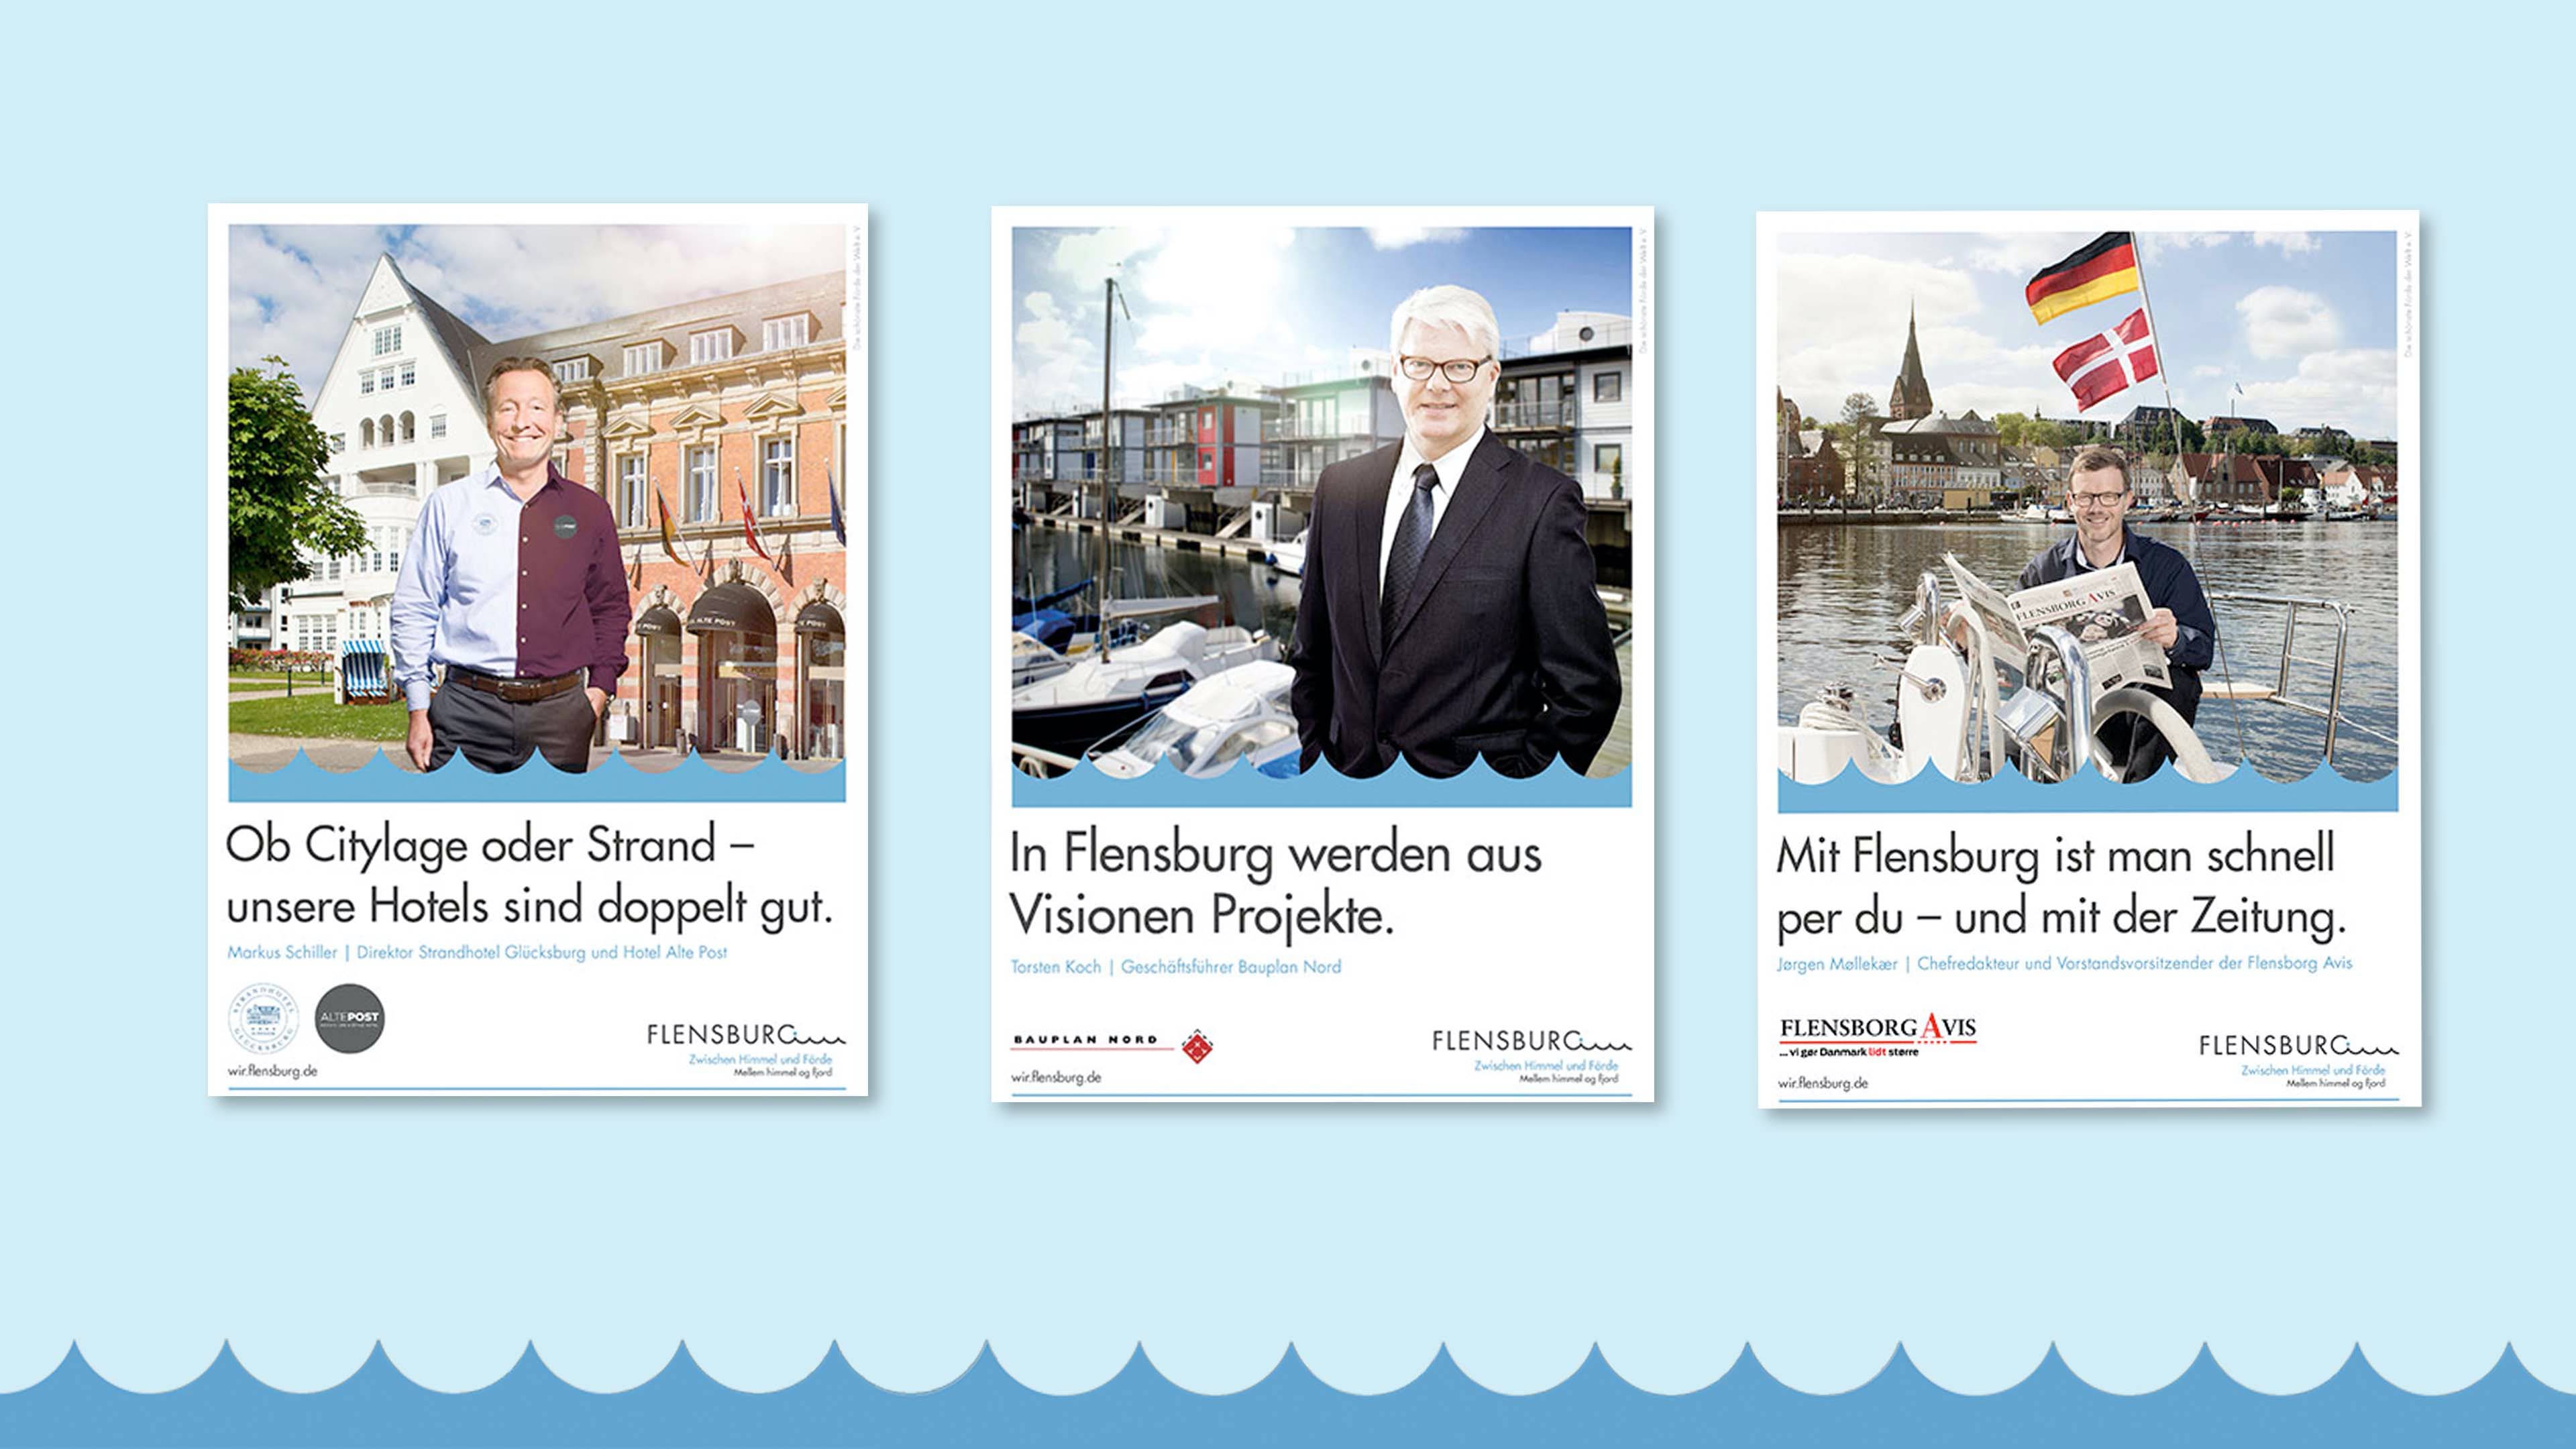 Drei Bilder der Flensburg-Kampagne zeigen je Geschäftsführer, mit Firmen- und Flensburglogo und Texten